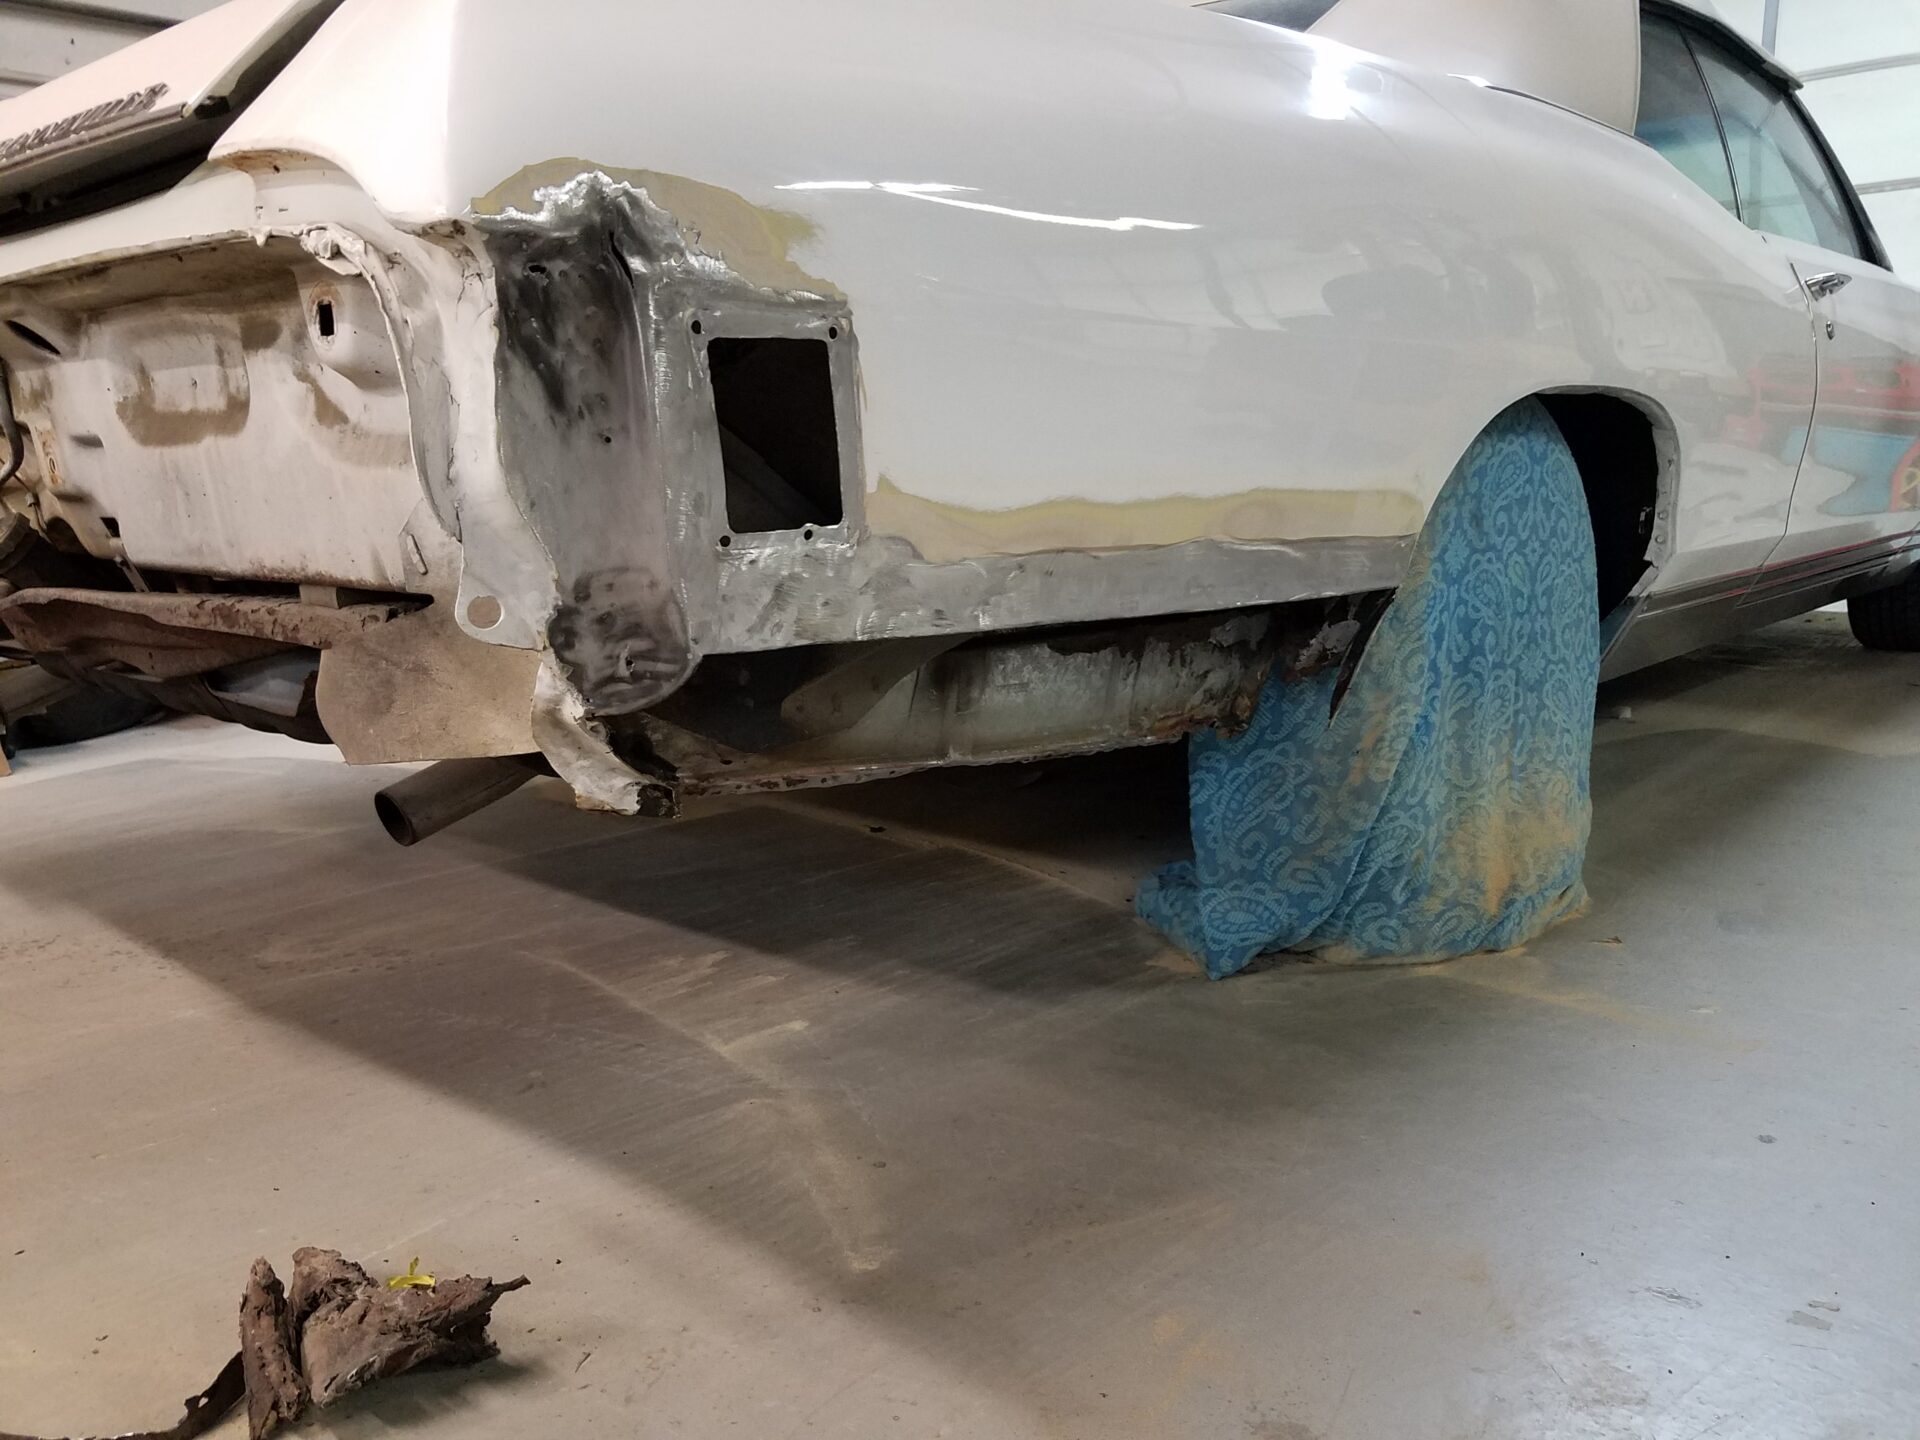 Damaged parts of the 1970 Pontiac Bonneville